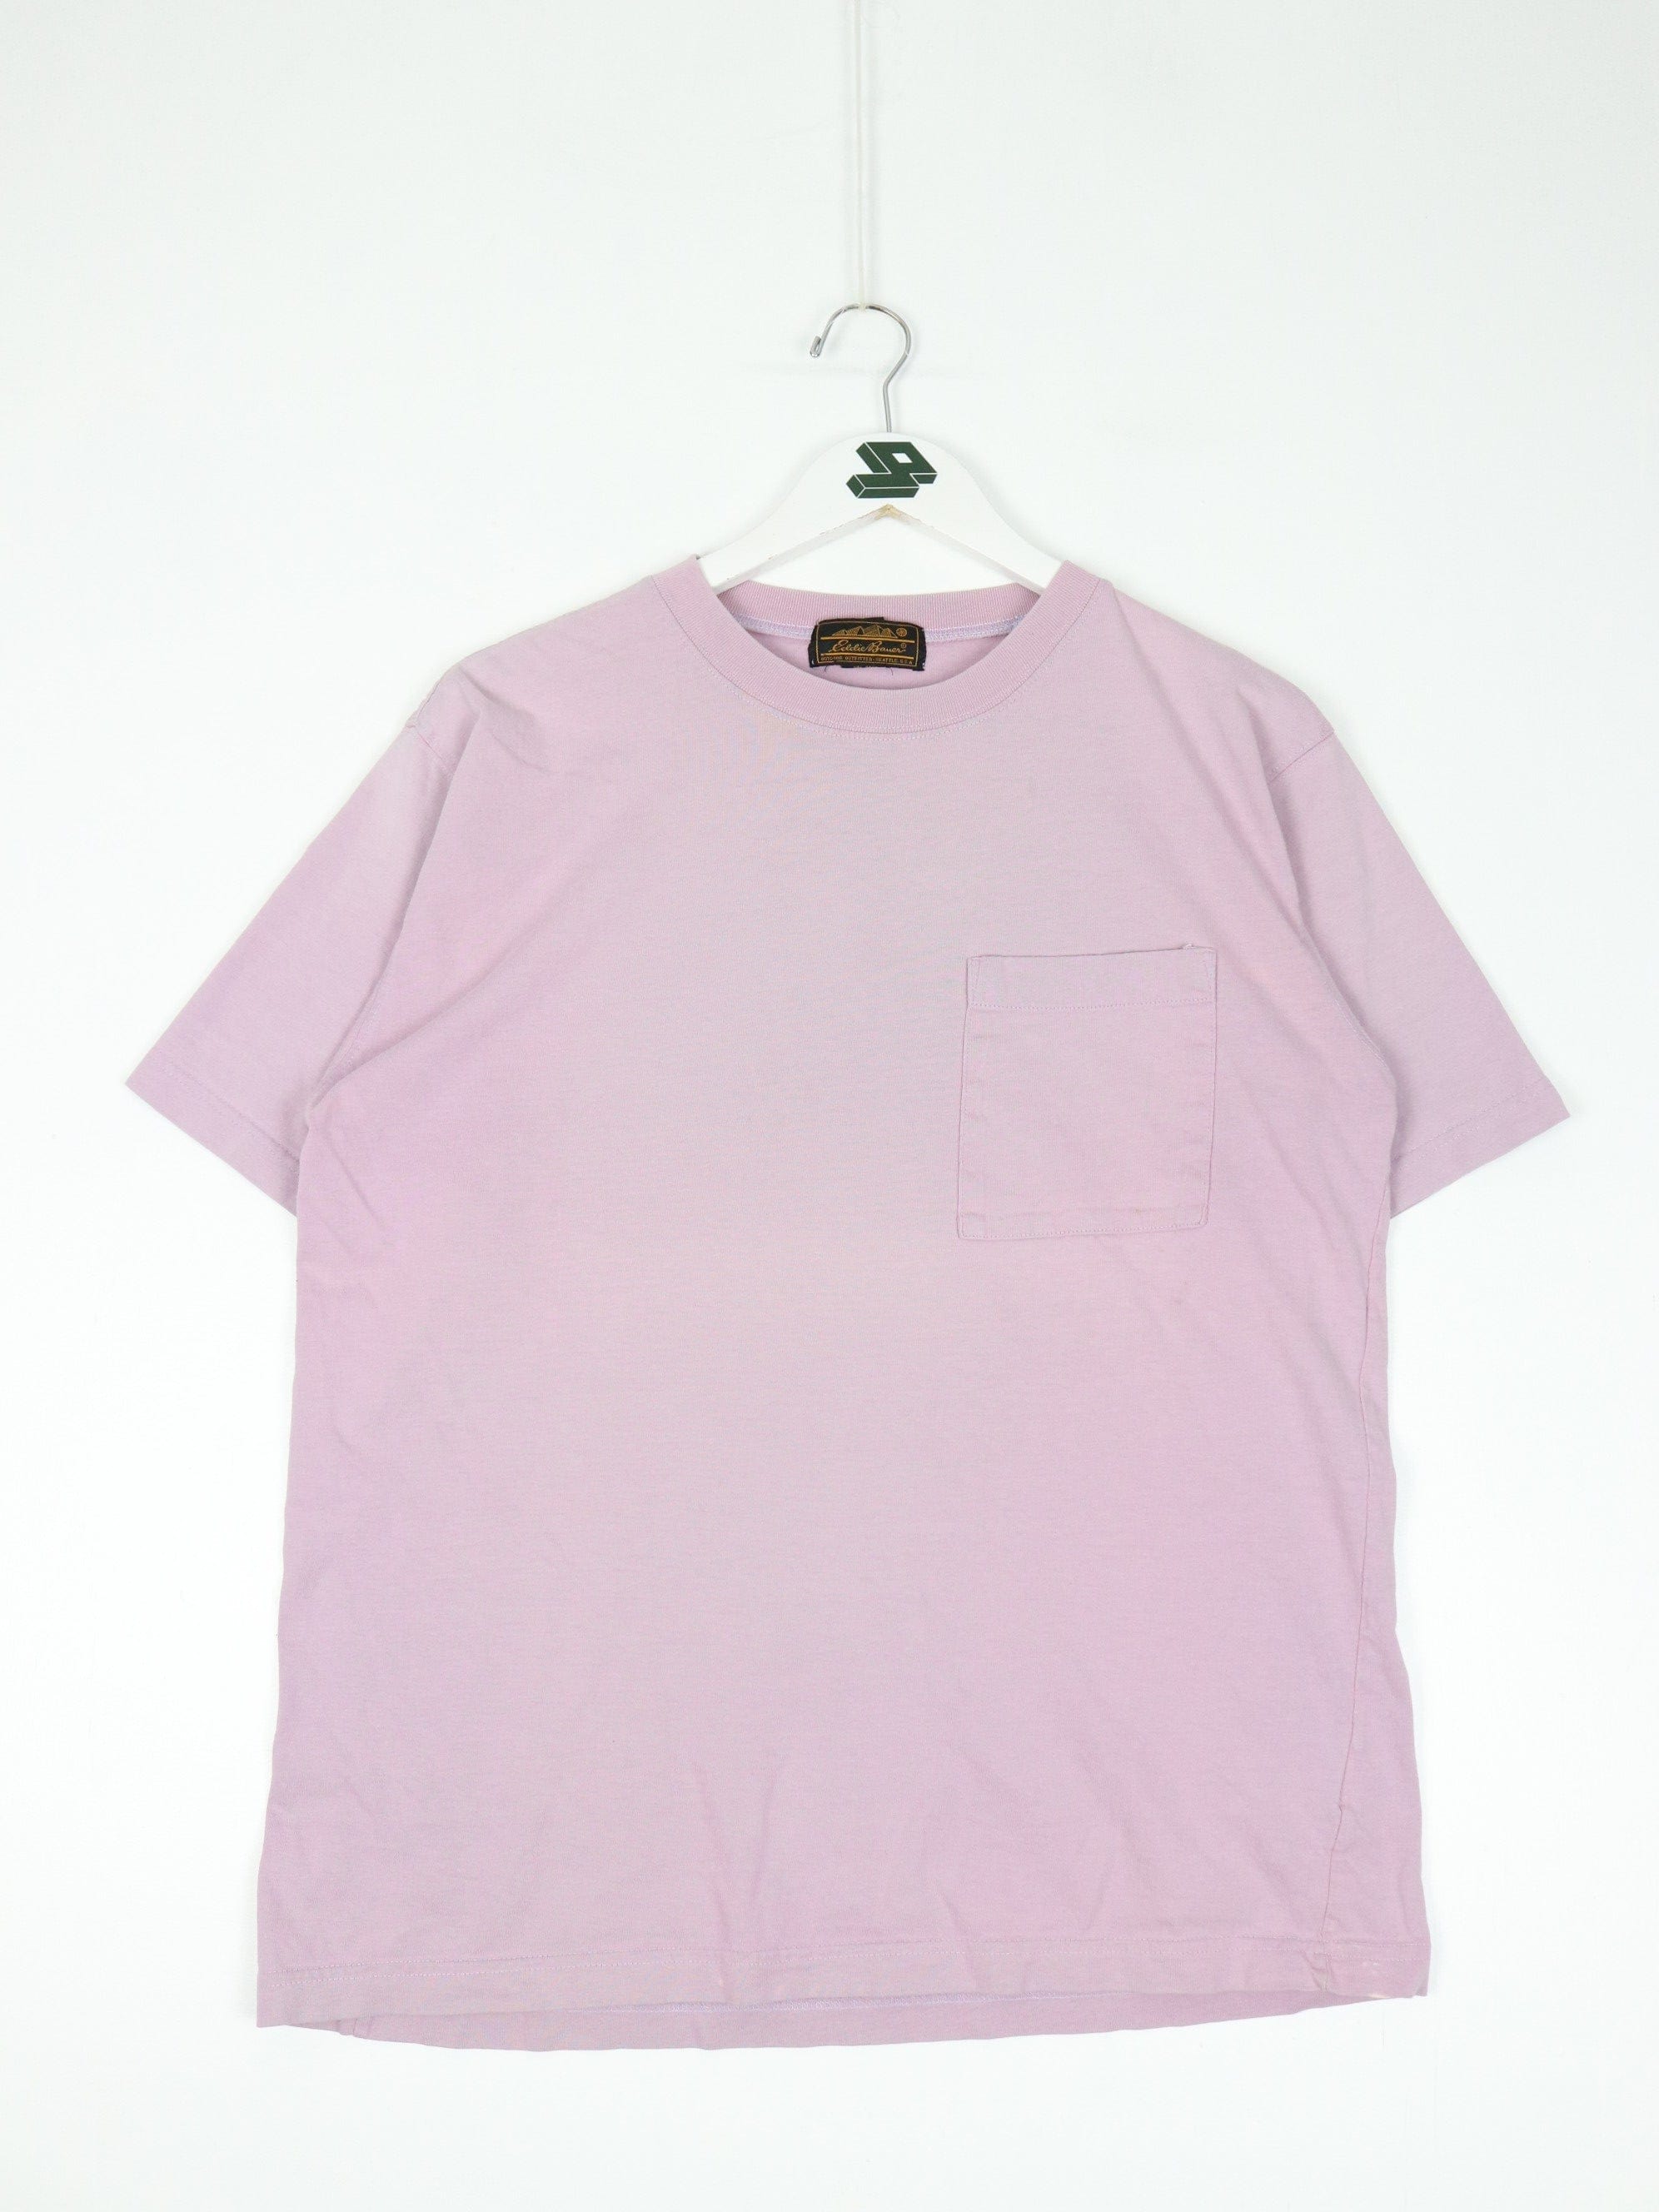 Eddie Bauer Pink T-Shirts